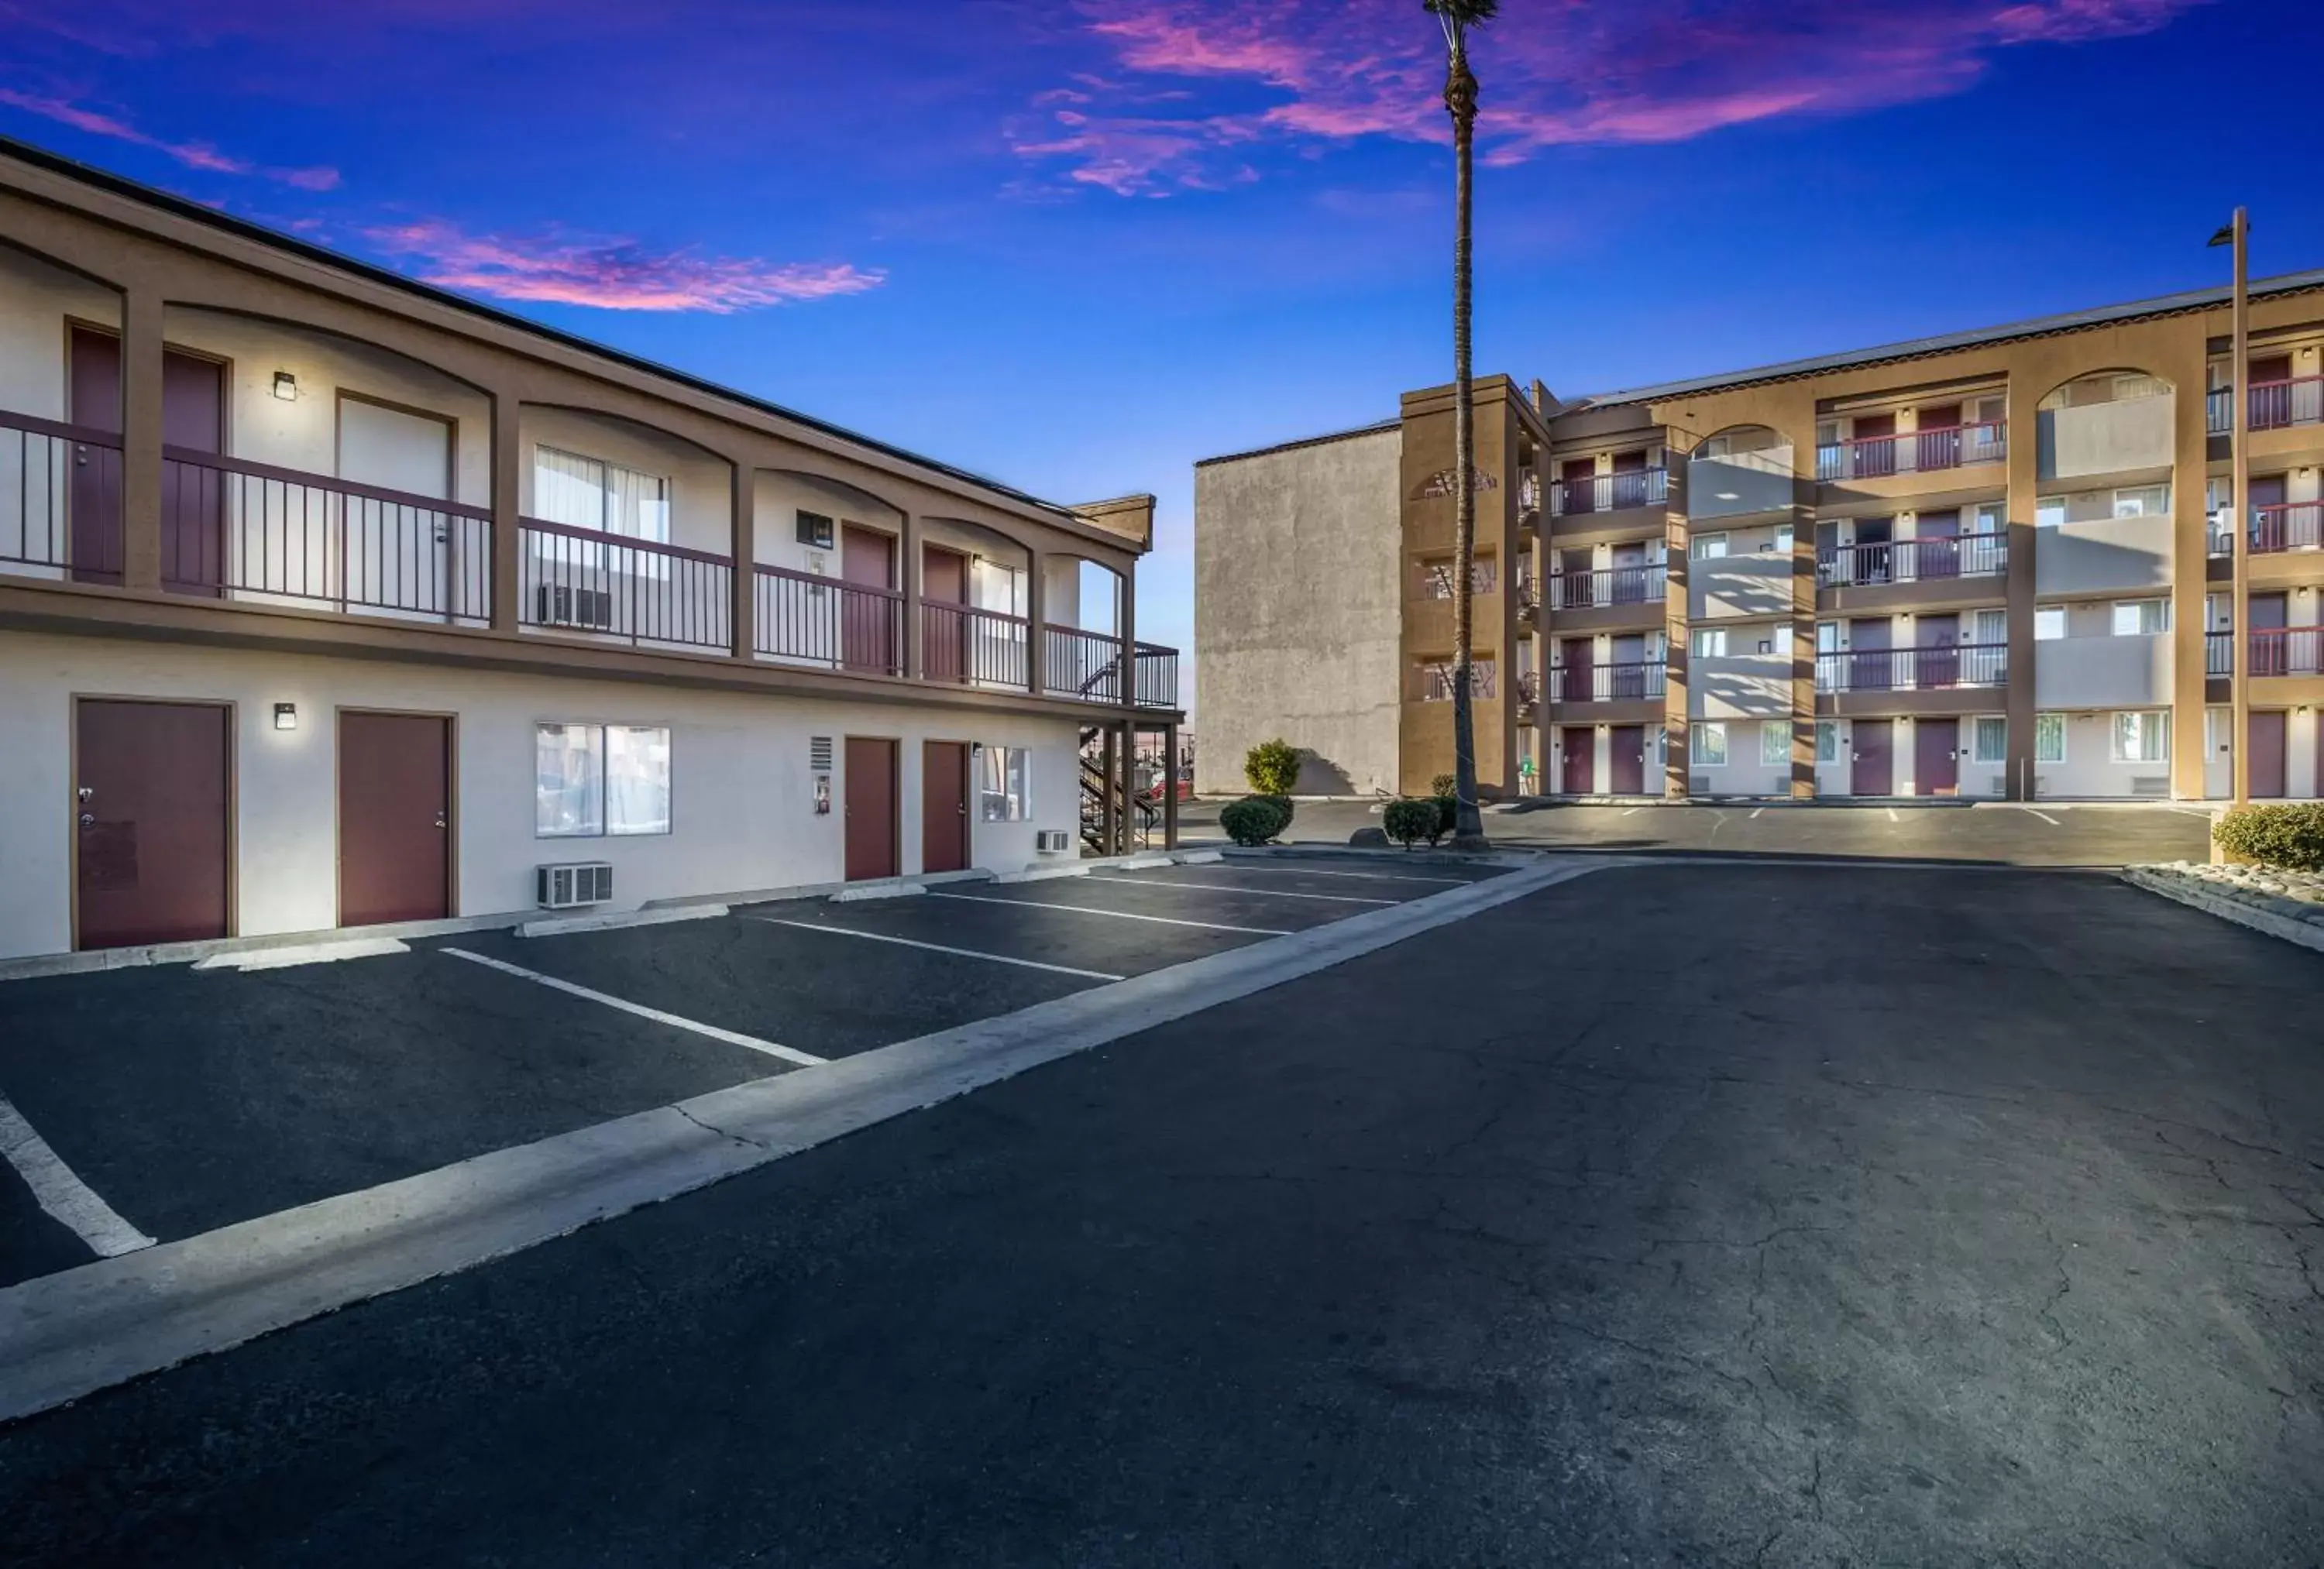 Property building, Swimming Pool in Days Inn by Wyndham Chula Vista-San Diego